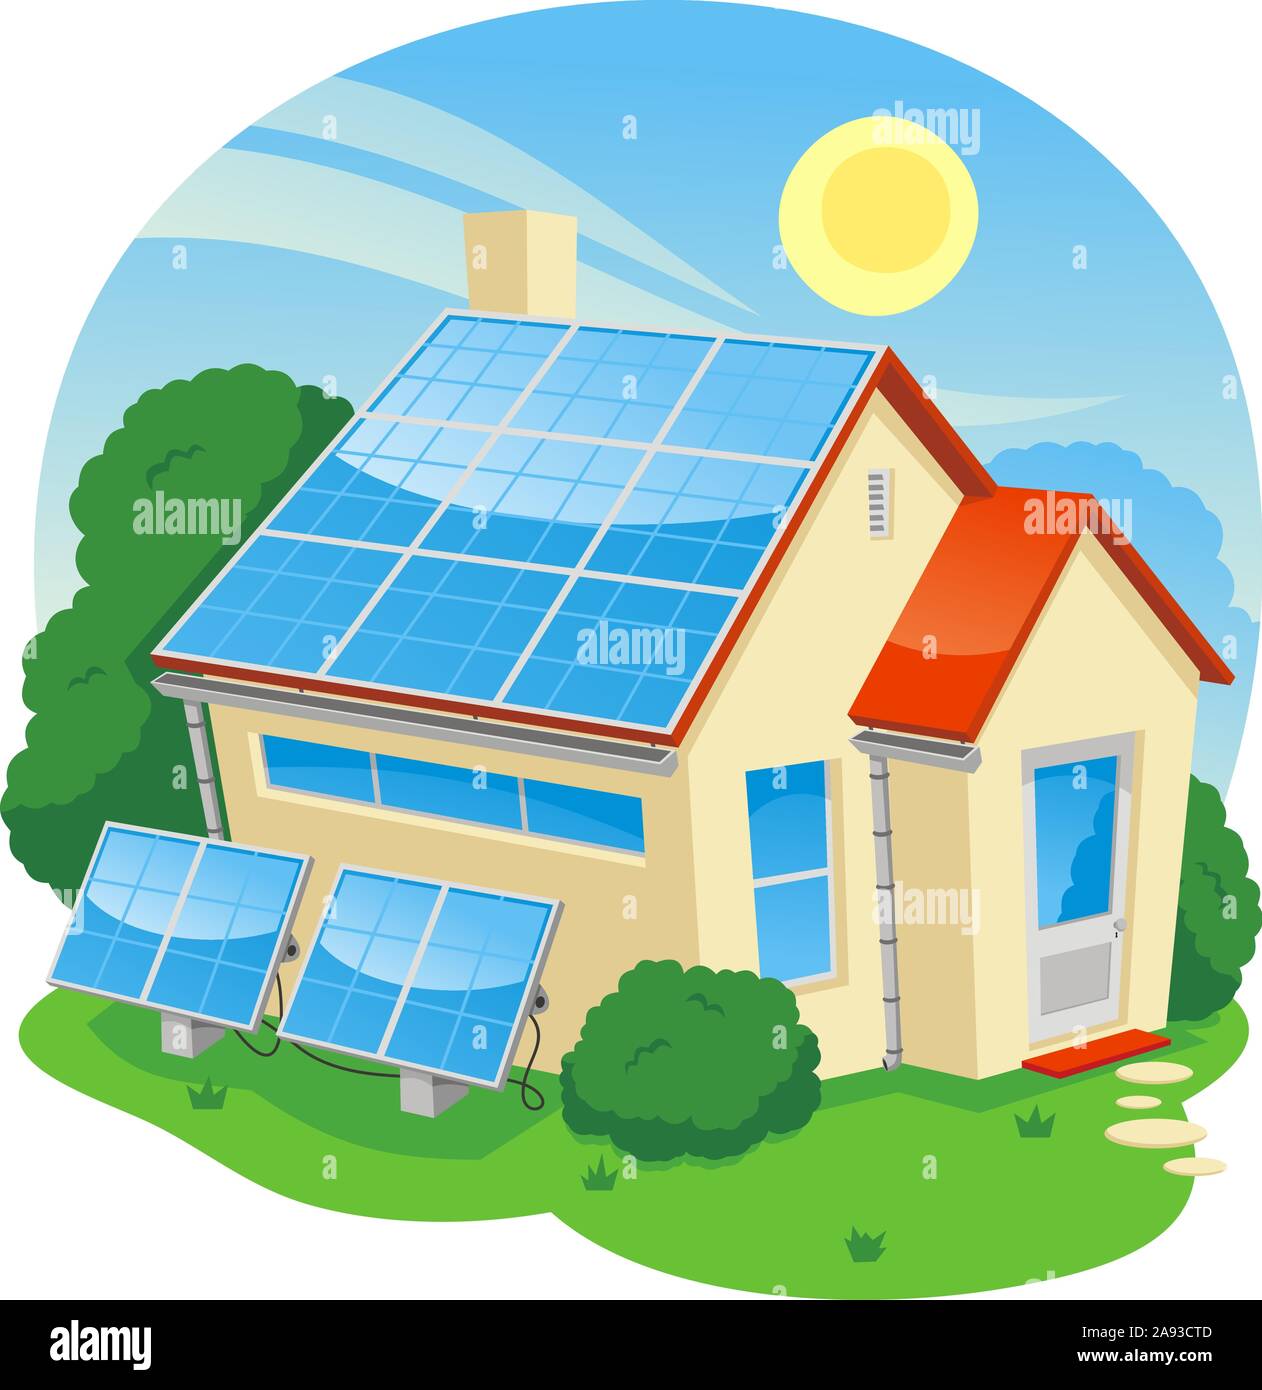 solar energy house cartoon illustration Stock Vector